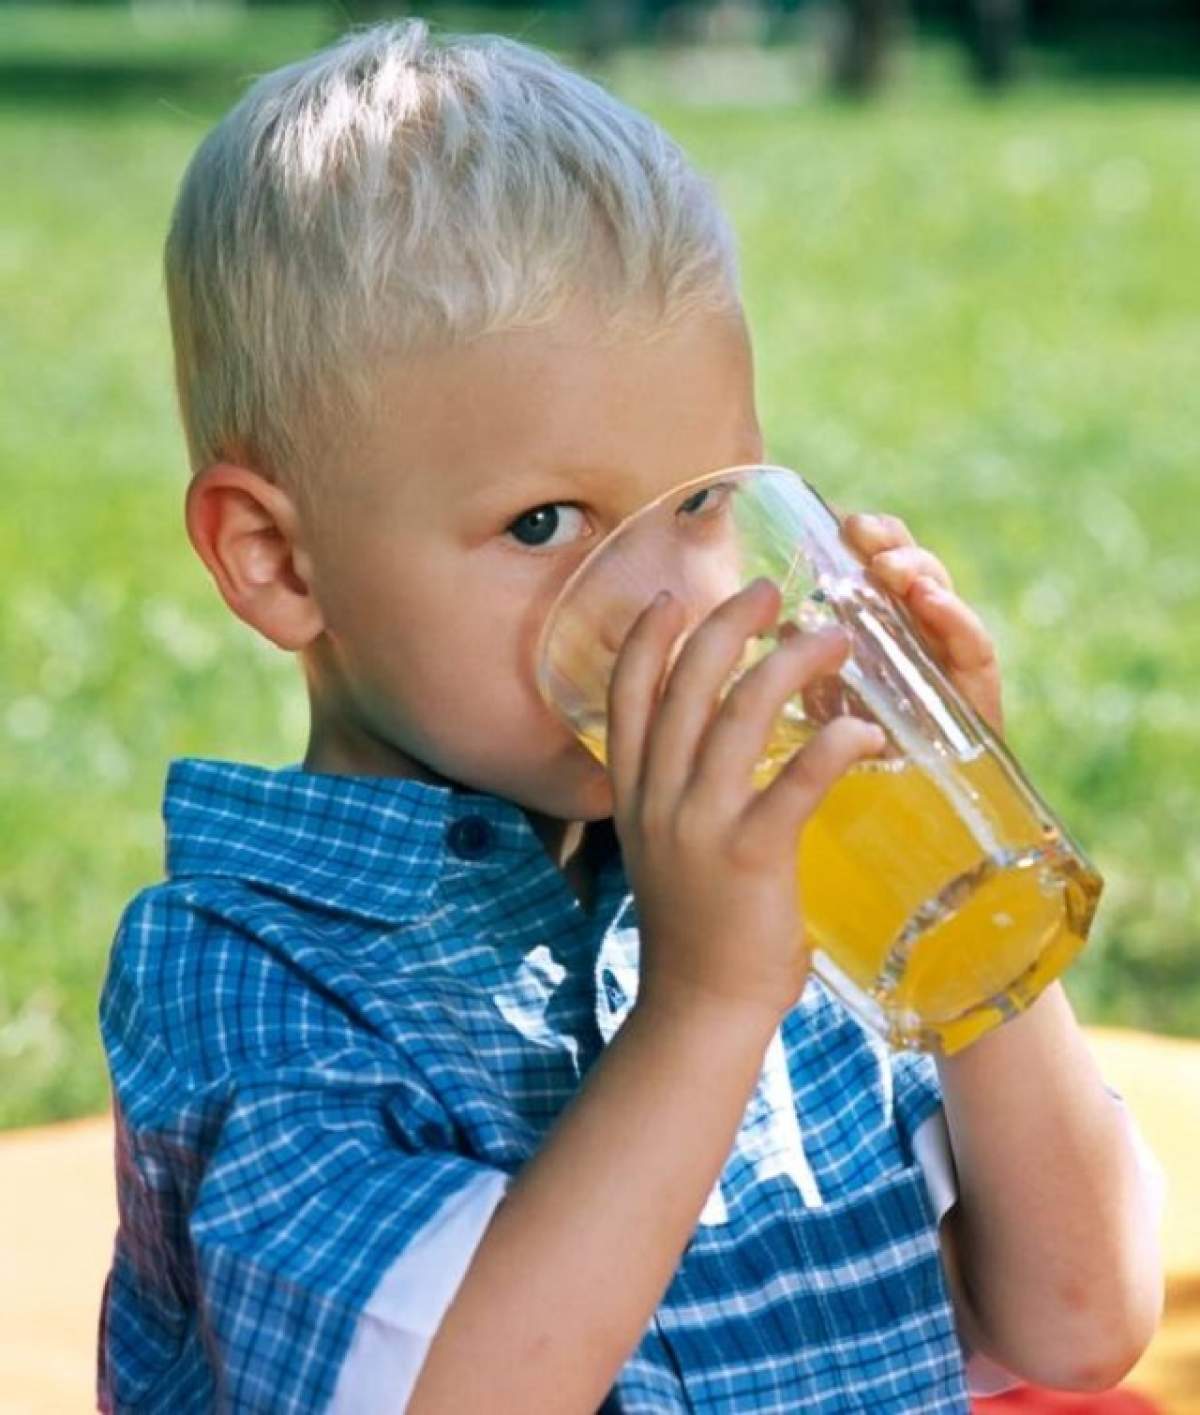 Sucurile "naturale" pentru copii, adevărate bombe chimice! Ce boli grave provoacă banalele băuturi răcoritoare